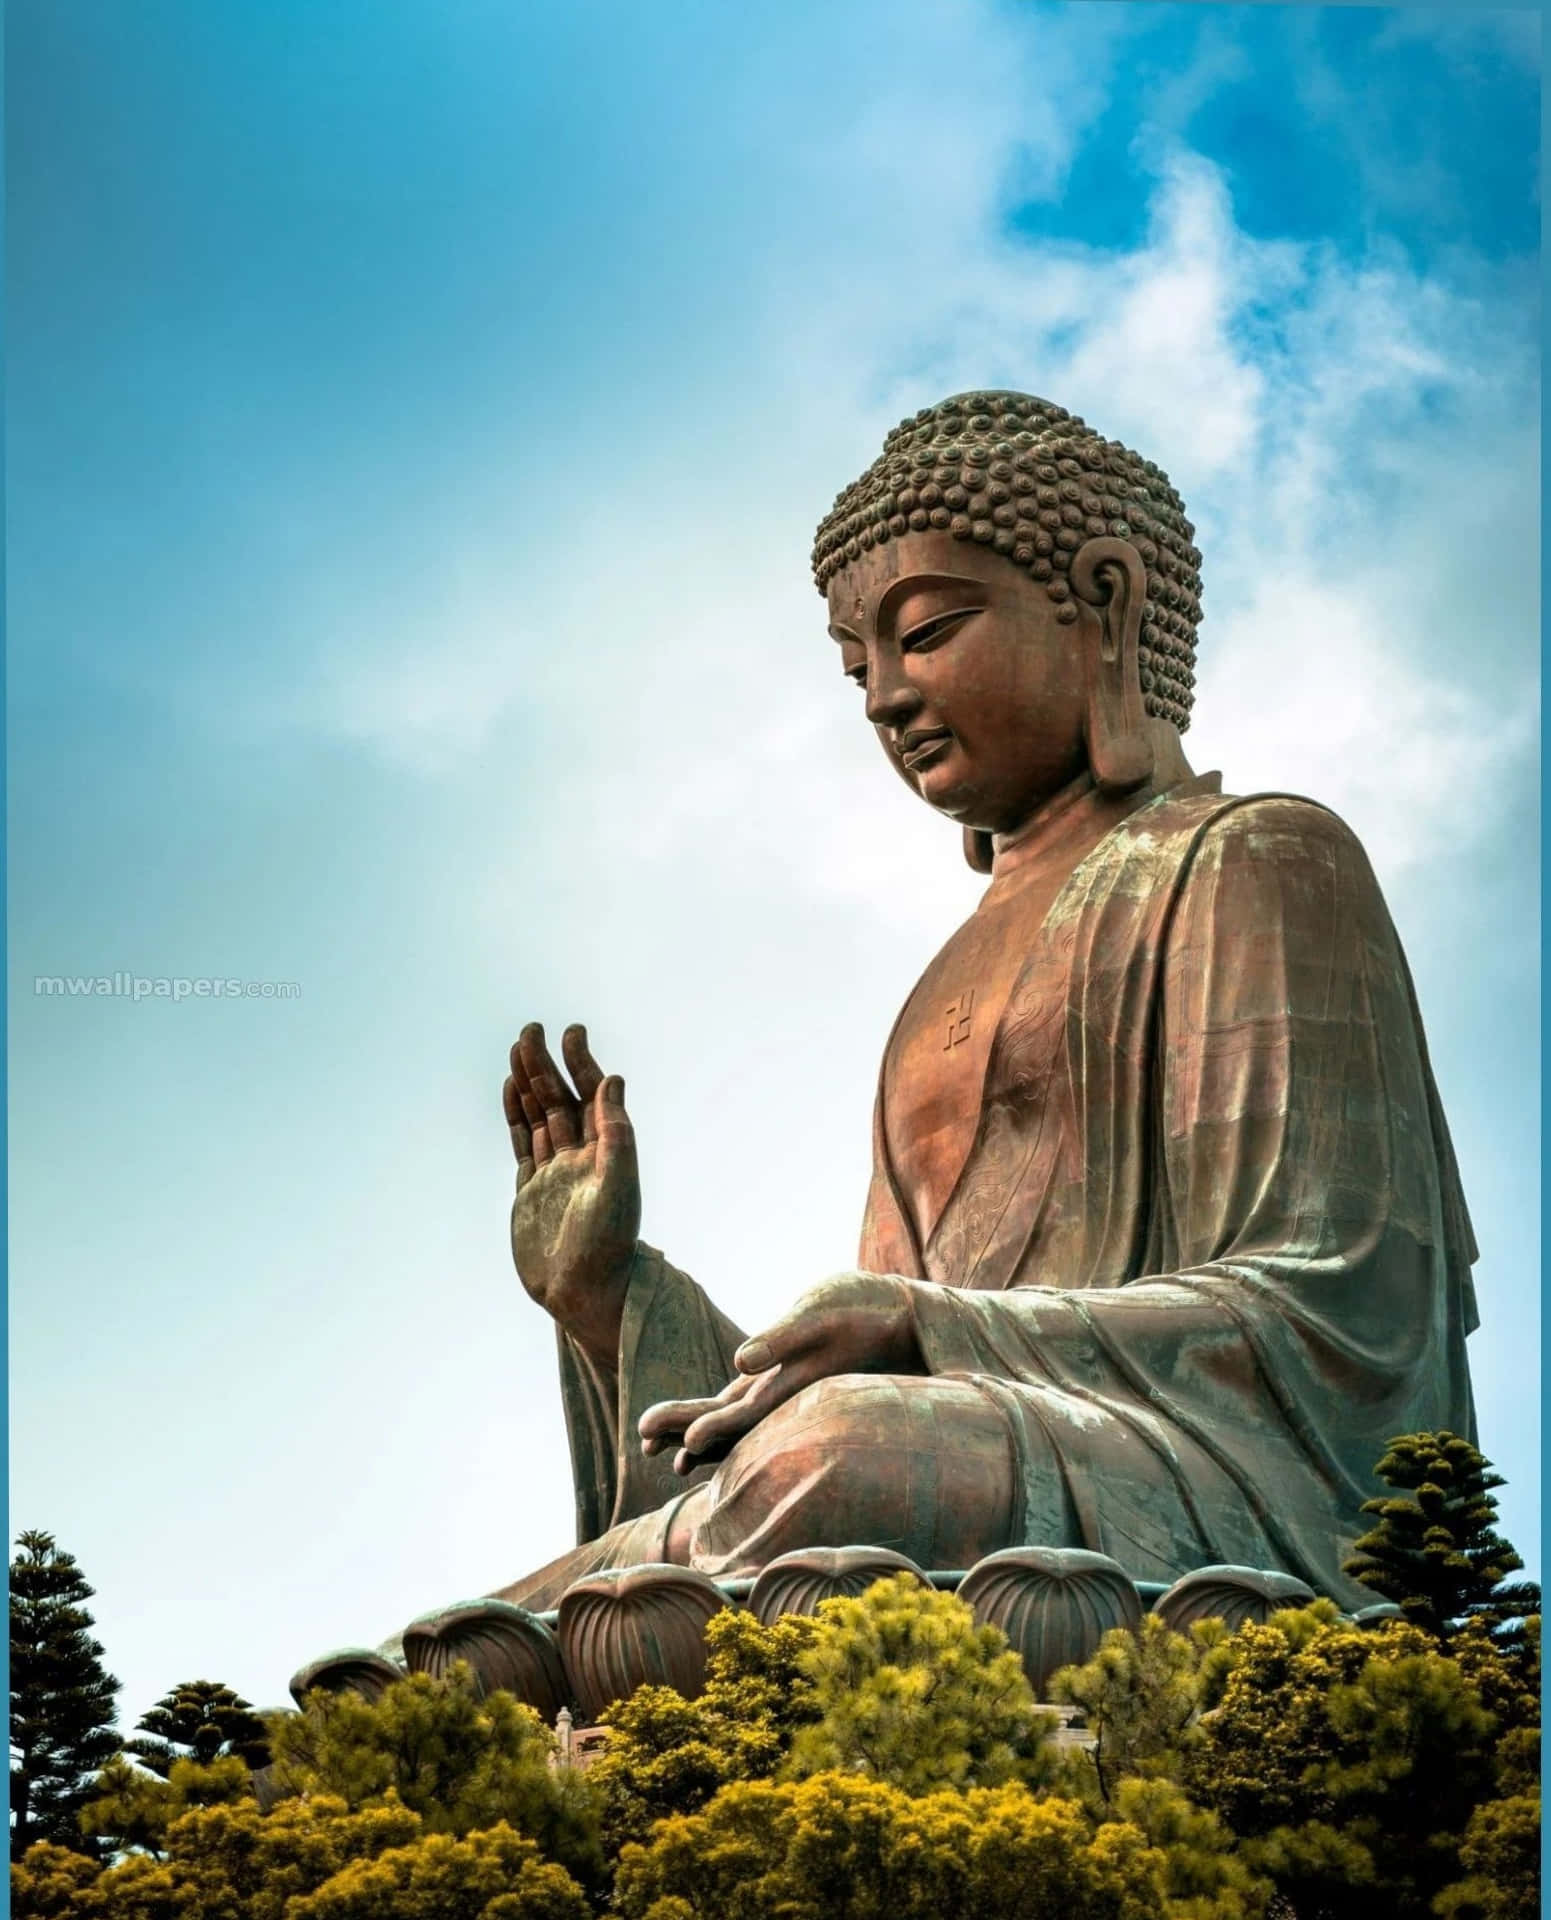 Unagran Estatua De Buda Está Sentada En Medio De Un Bosque.